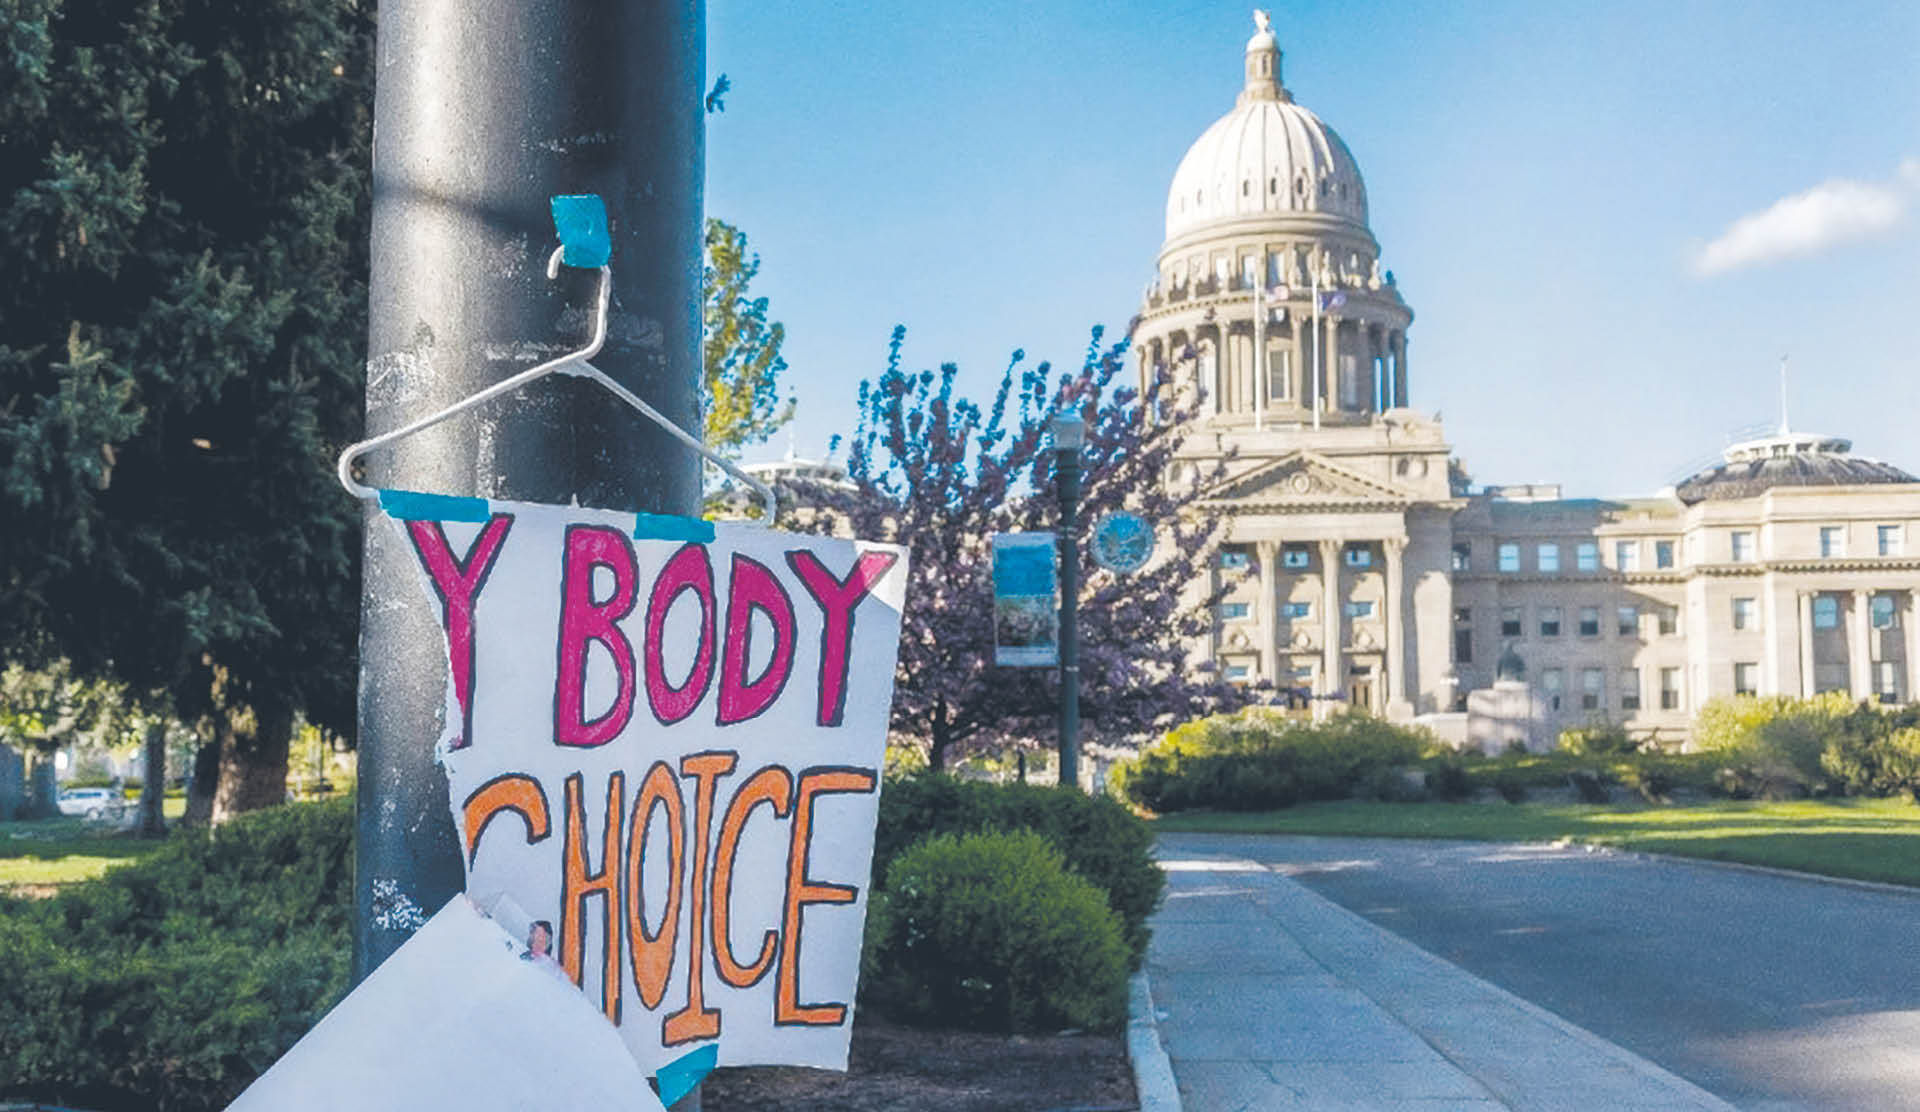 Plakat w pobliżu siedziby Izby Reprezentantów stanu Idaho pojawił się po protestach przeciwko nowym przepisom aborcyjnym